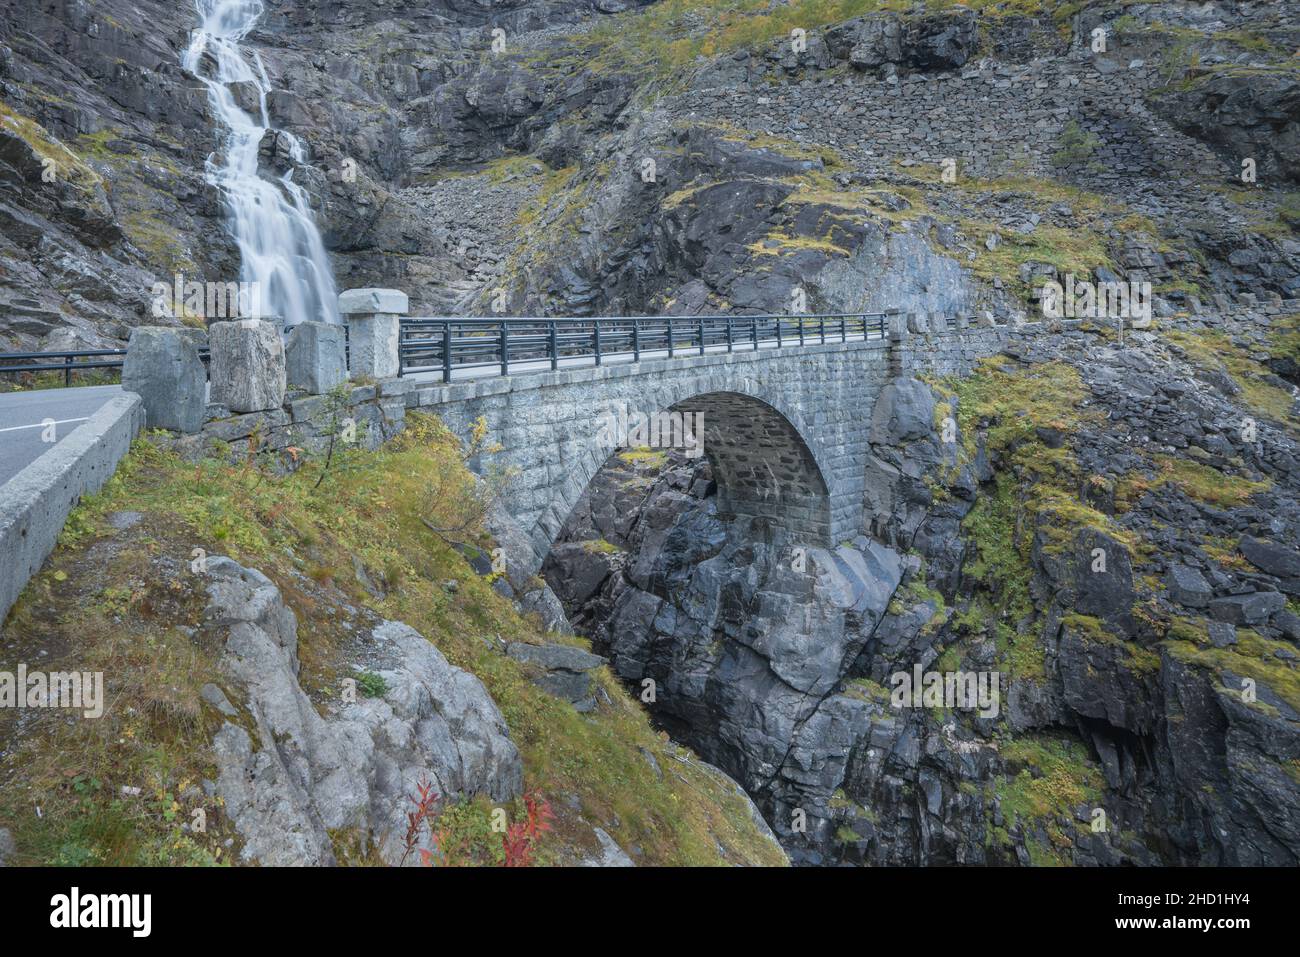 Stretto ponte di pietra sulla serpentina della famosa strada di montagna Troll Stigen, o Trollstigen, in Norvegia. Cascata Stigfossen sul retro. Foto Stock